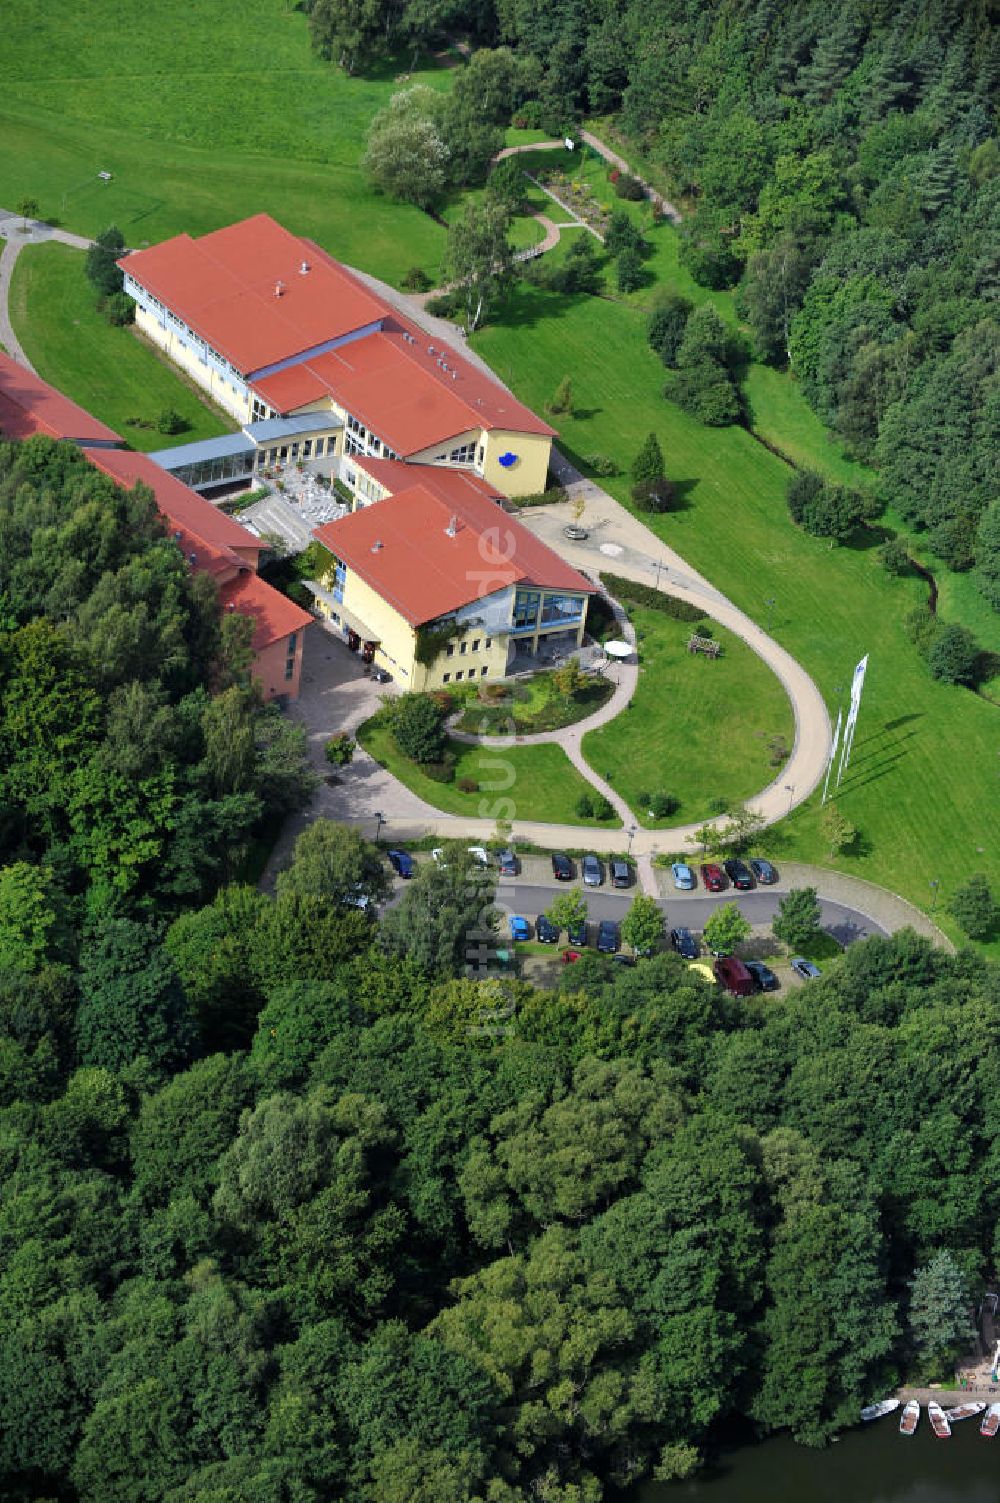 Luftbild Friedrichroda - Ausbildungszentrum BGN Reinhardsbrunn in Thüringen